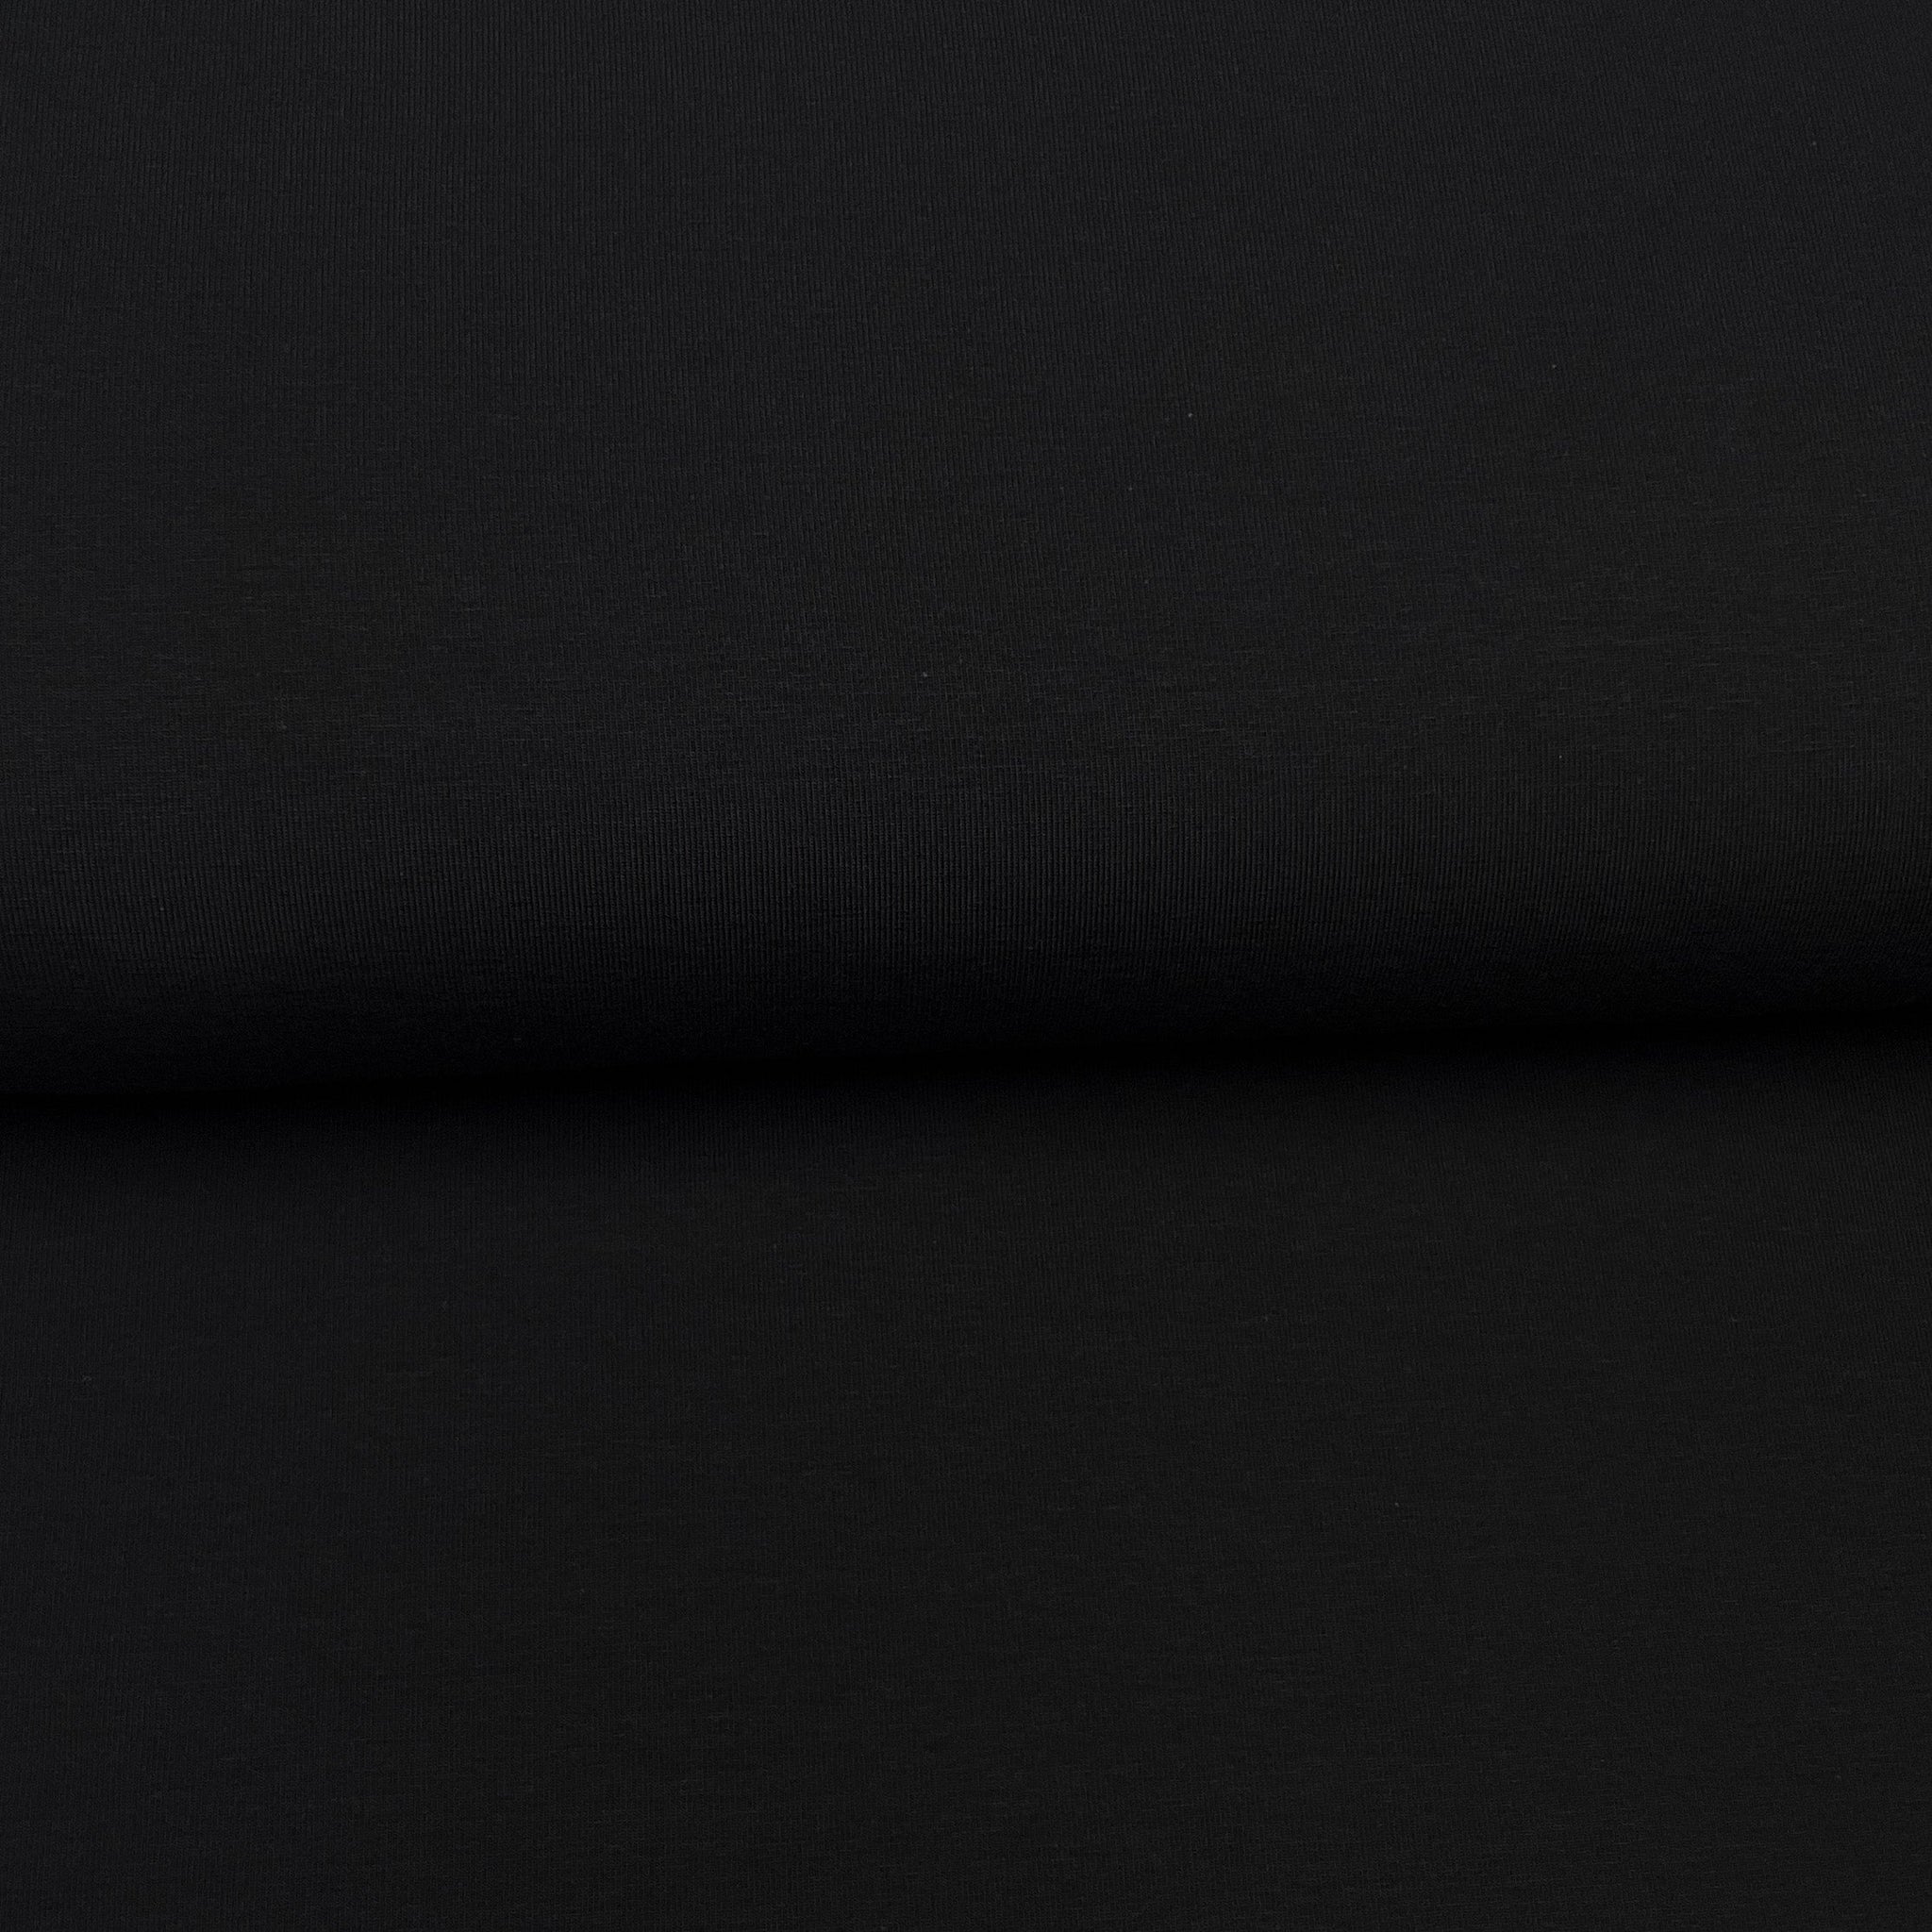 Fin de rouleau 34 cm - Noir - Jersey uni